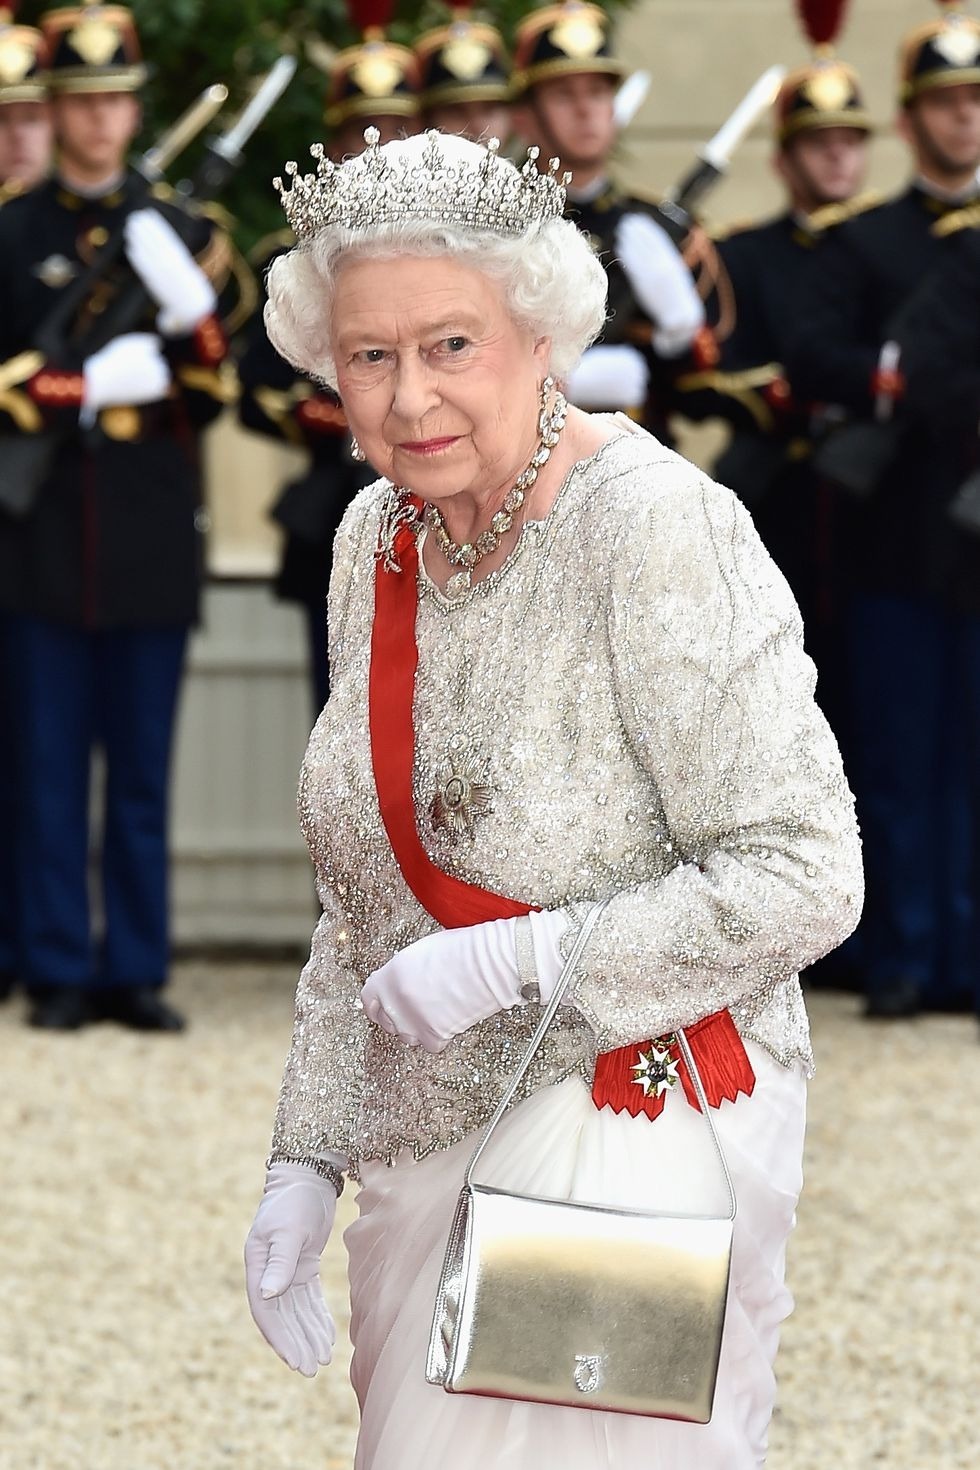 Một mẫu túi với lớp da bạc sang trọng, được nữ hoàng phối cùng trang phục lấp lánh.